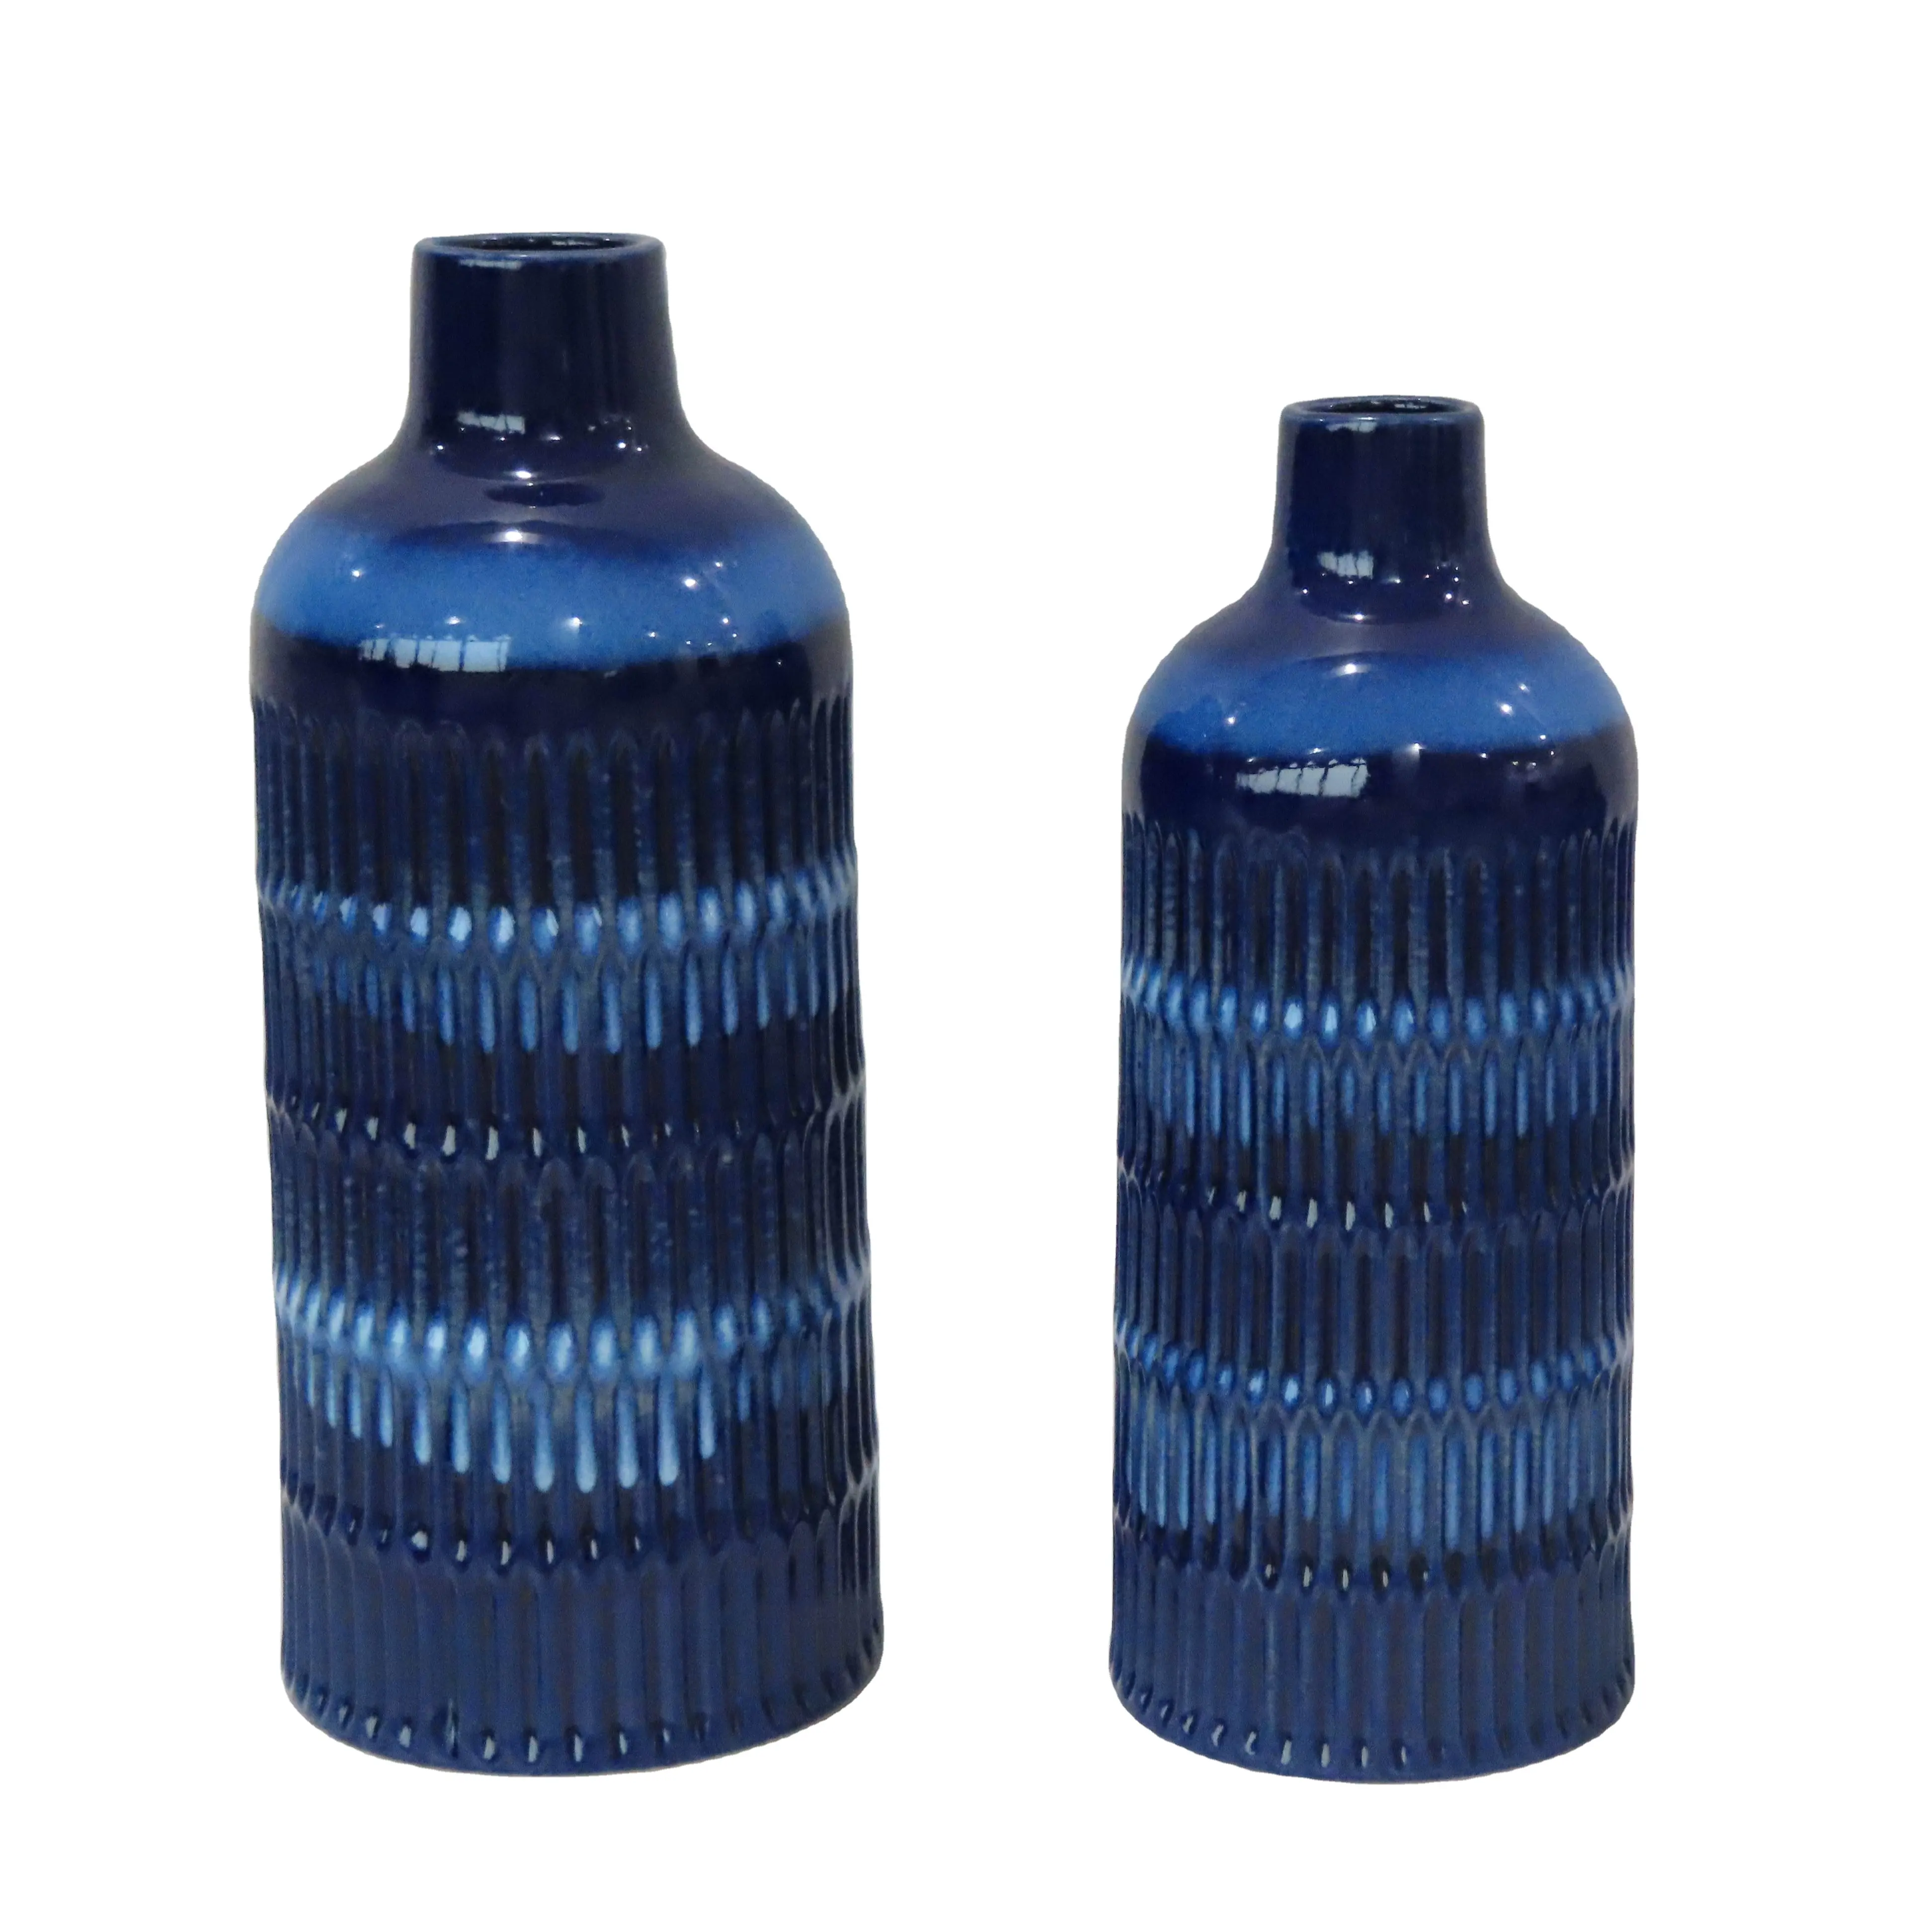 Vase en porcelaine bleu et blanc Style nordique européen porcelaine réactif flux glaçure Vase pour la décoration intérieure cadeaux et artisanat